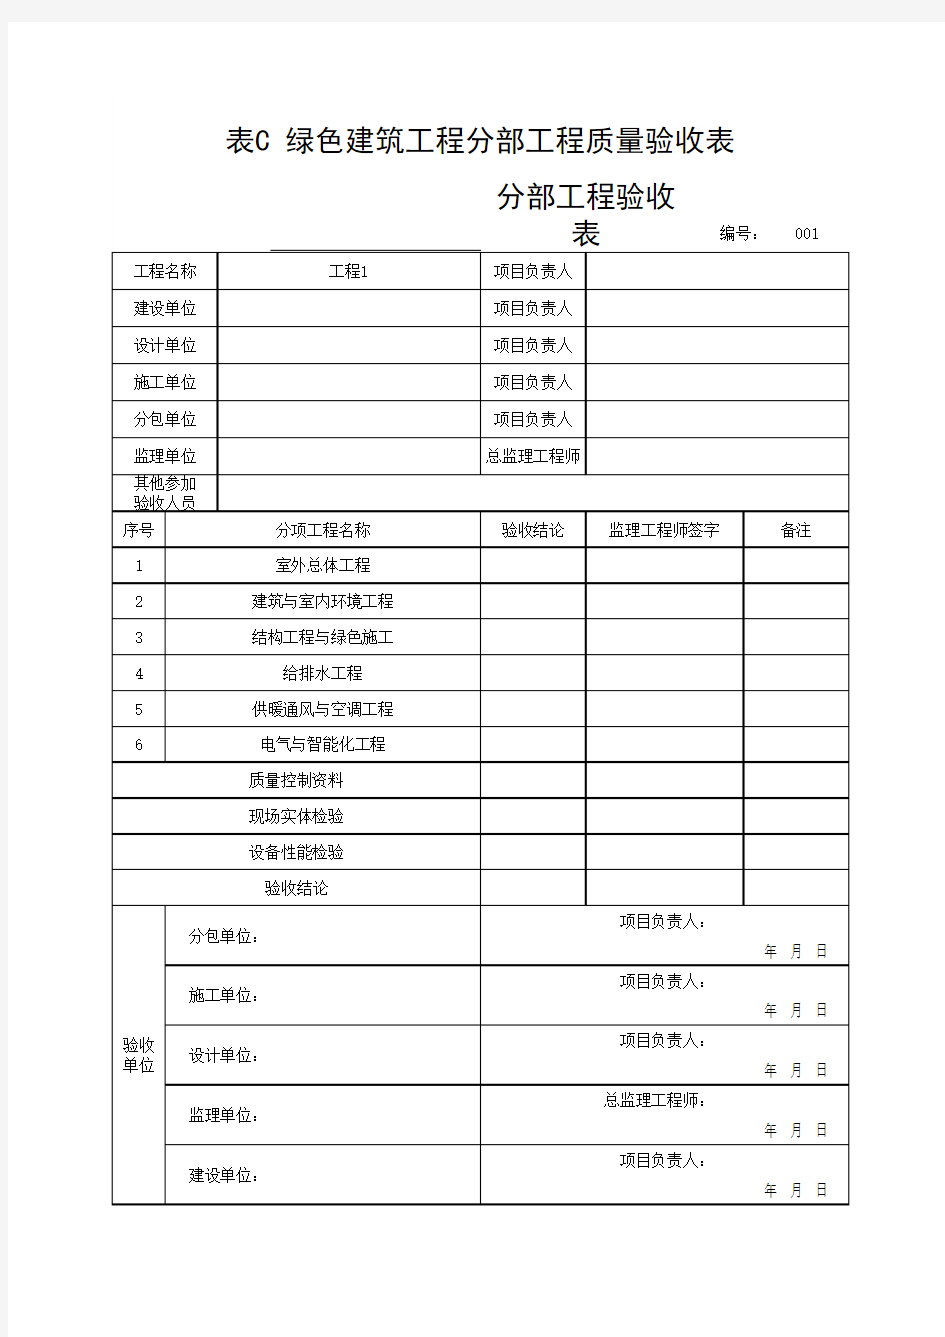 (上海市新版)绿色建筑工程分部工程质量验收表